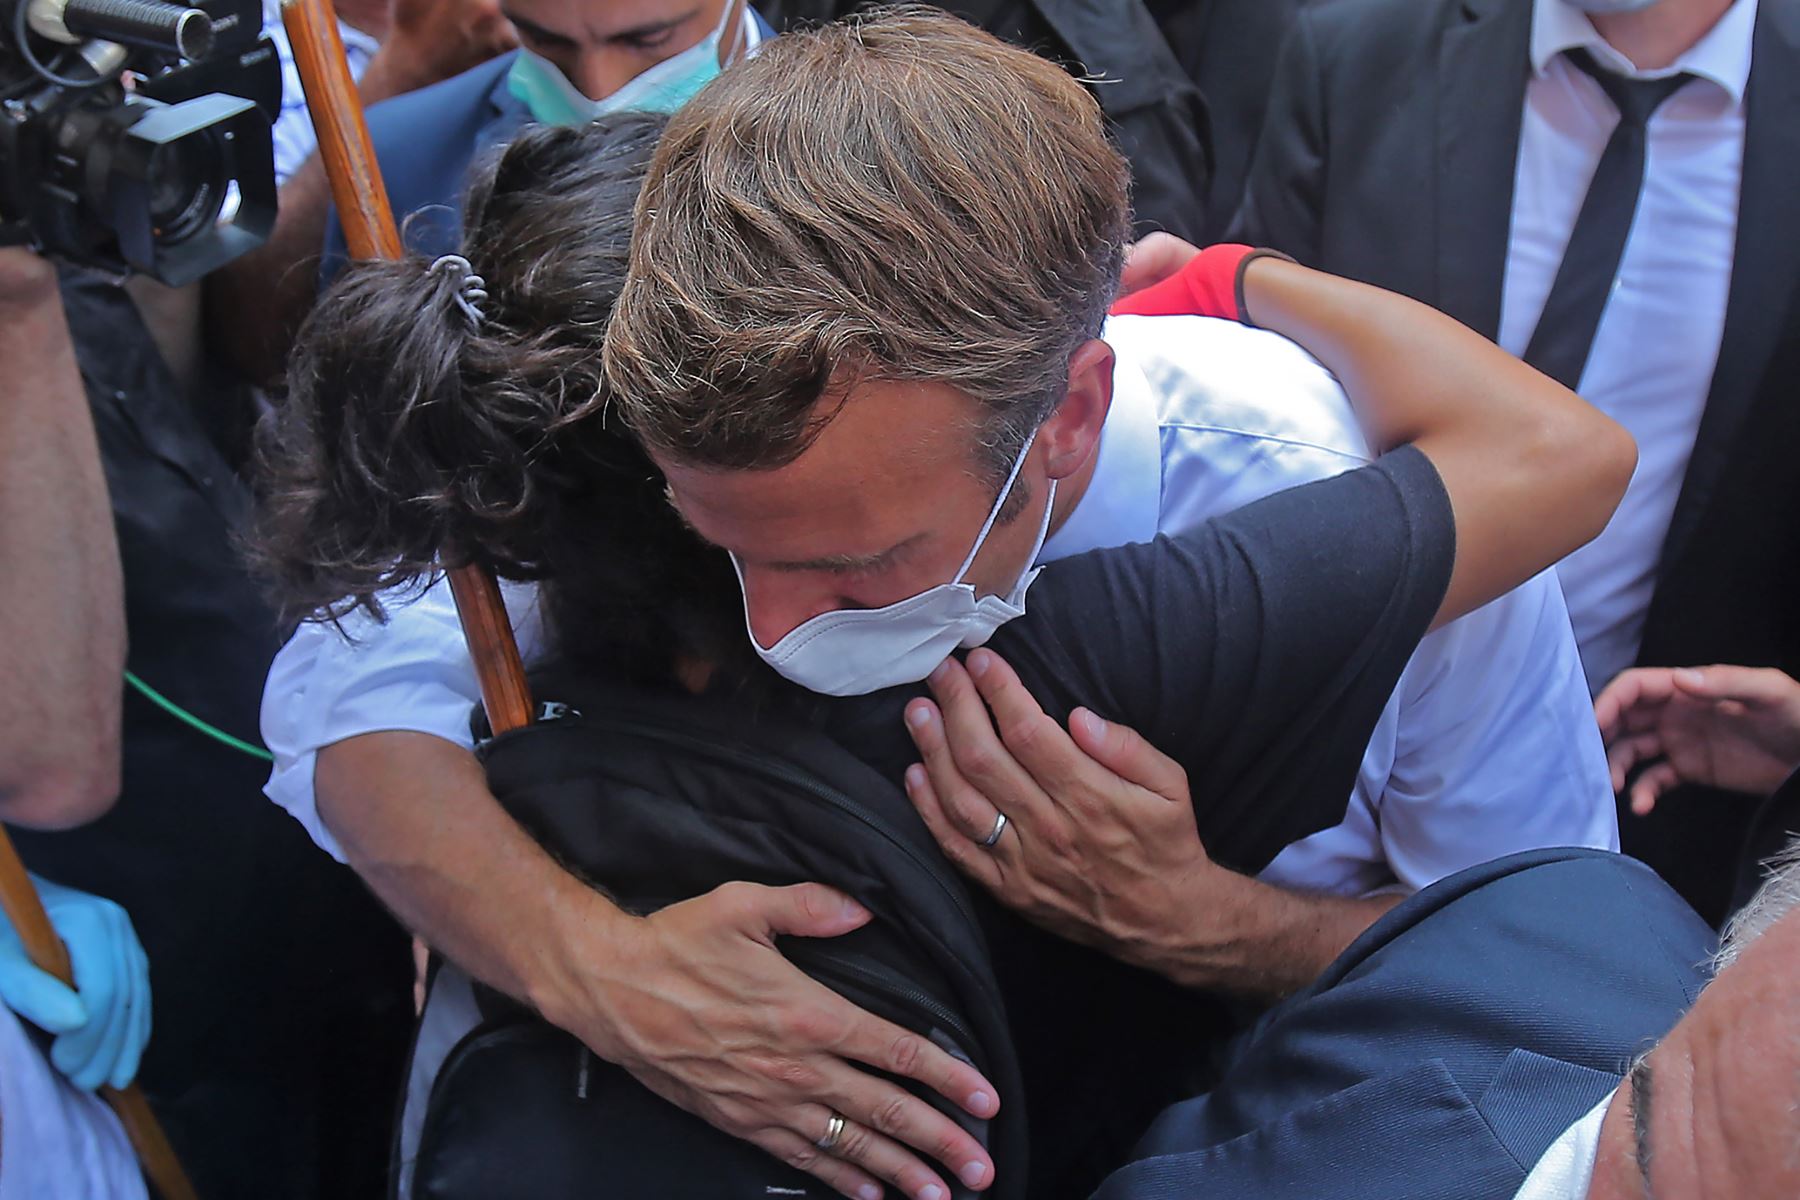 Un joven libanés abraza al presidente francés, Emmanuel Macron, durante una visita al barrio de Gemmayzeh, que ha sufrido grandes daños debido a una explosión masiva en la capital libanesa.
Foto: AFP